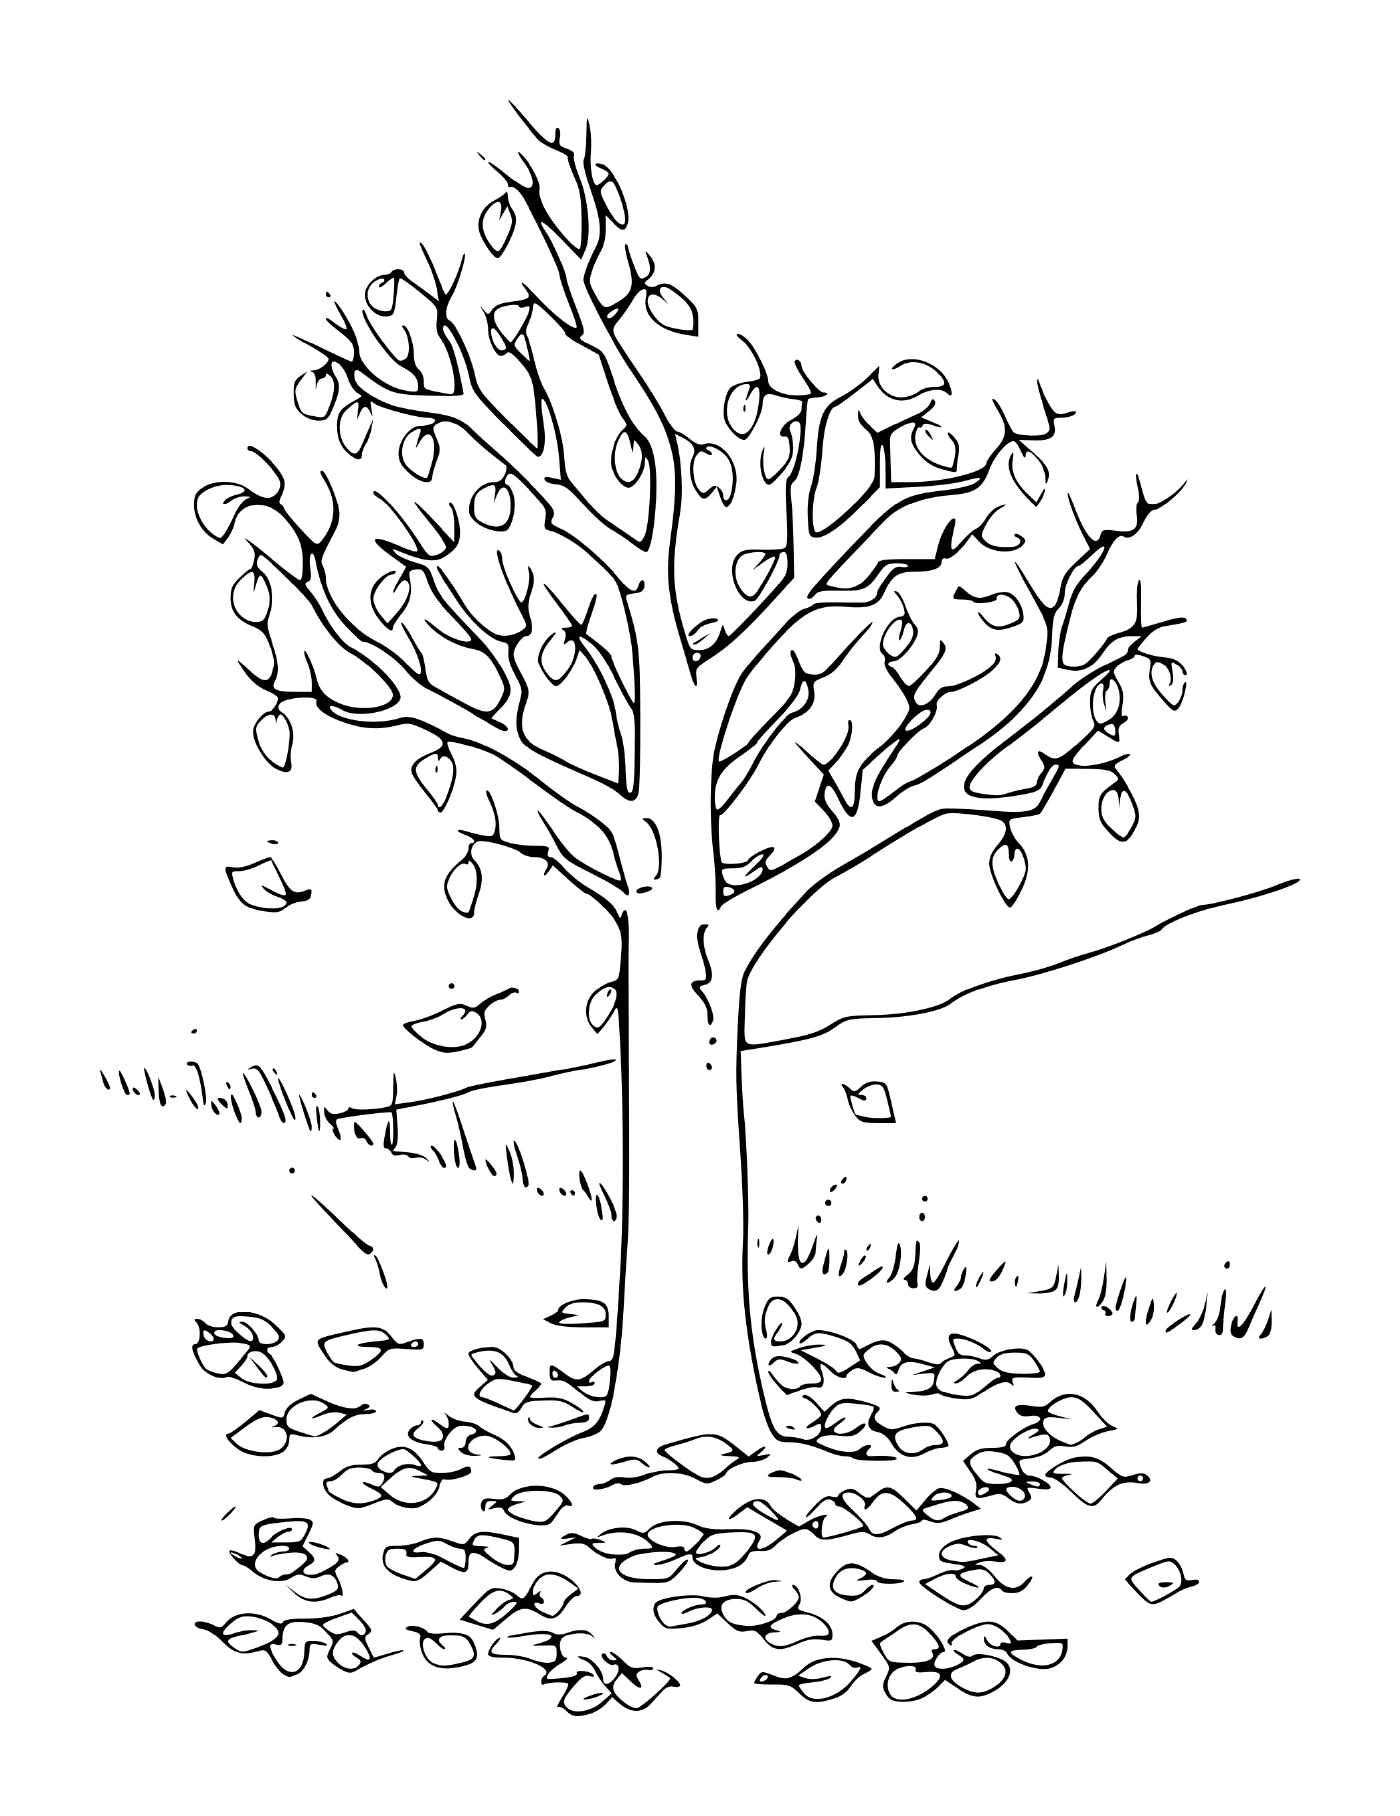  Ein Baum mit Blättern 